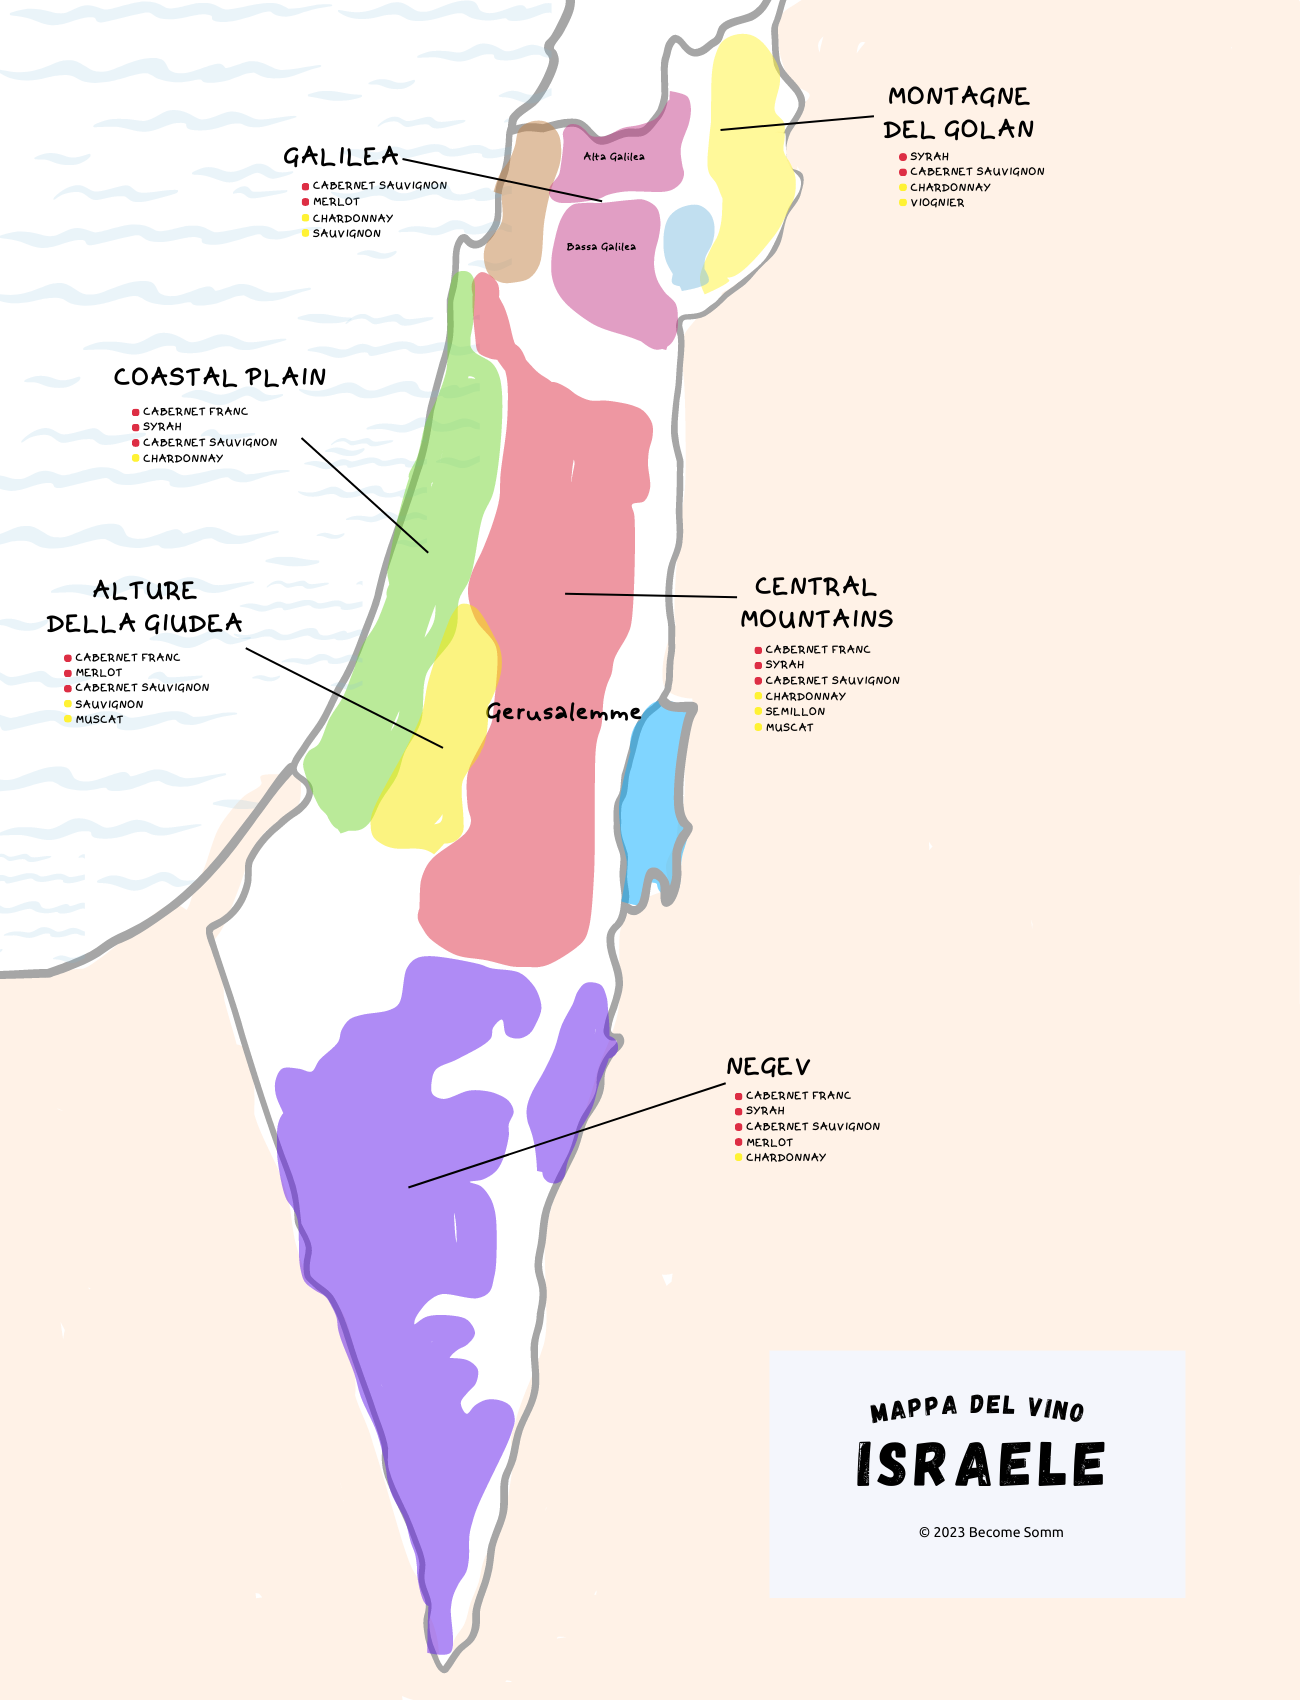 מפת יין ישראל
Wine Map Israel
Israele mappa del vino